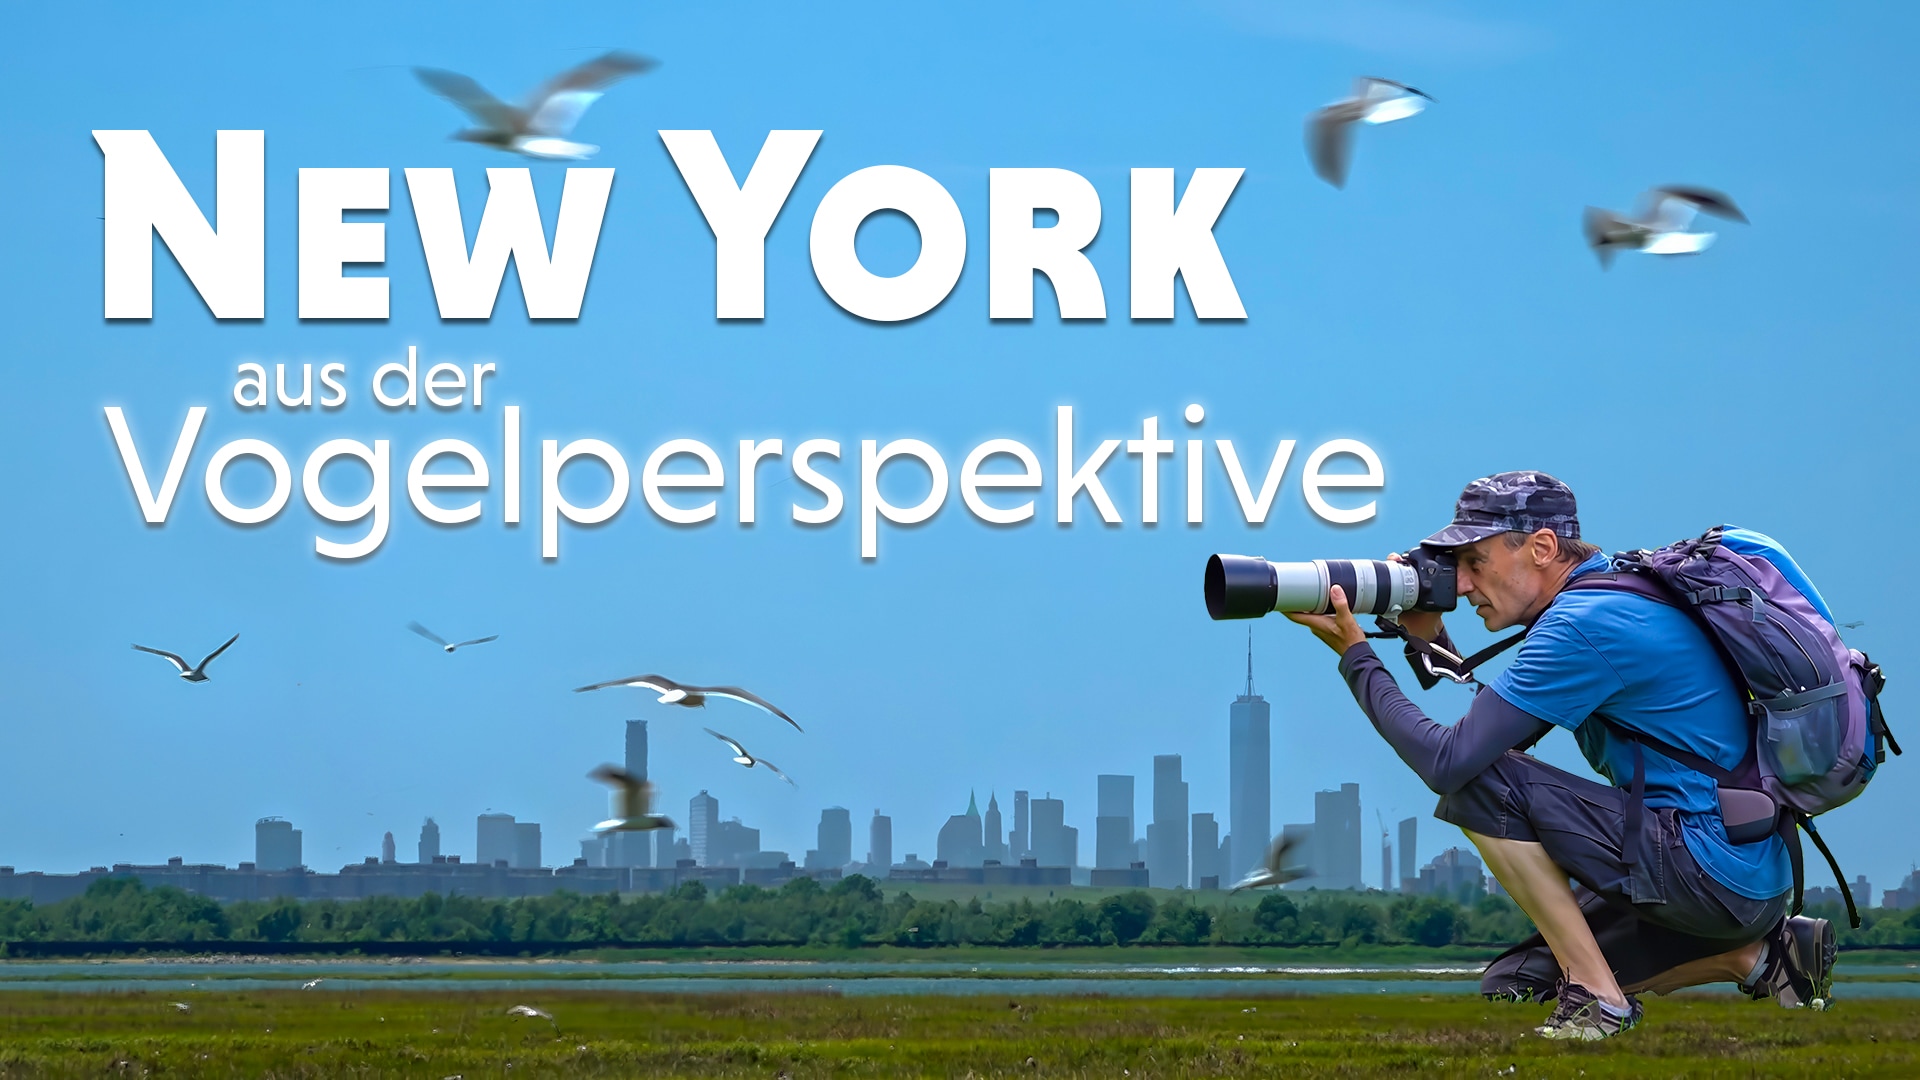 New York aus der Vogelperspektive